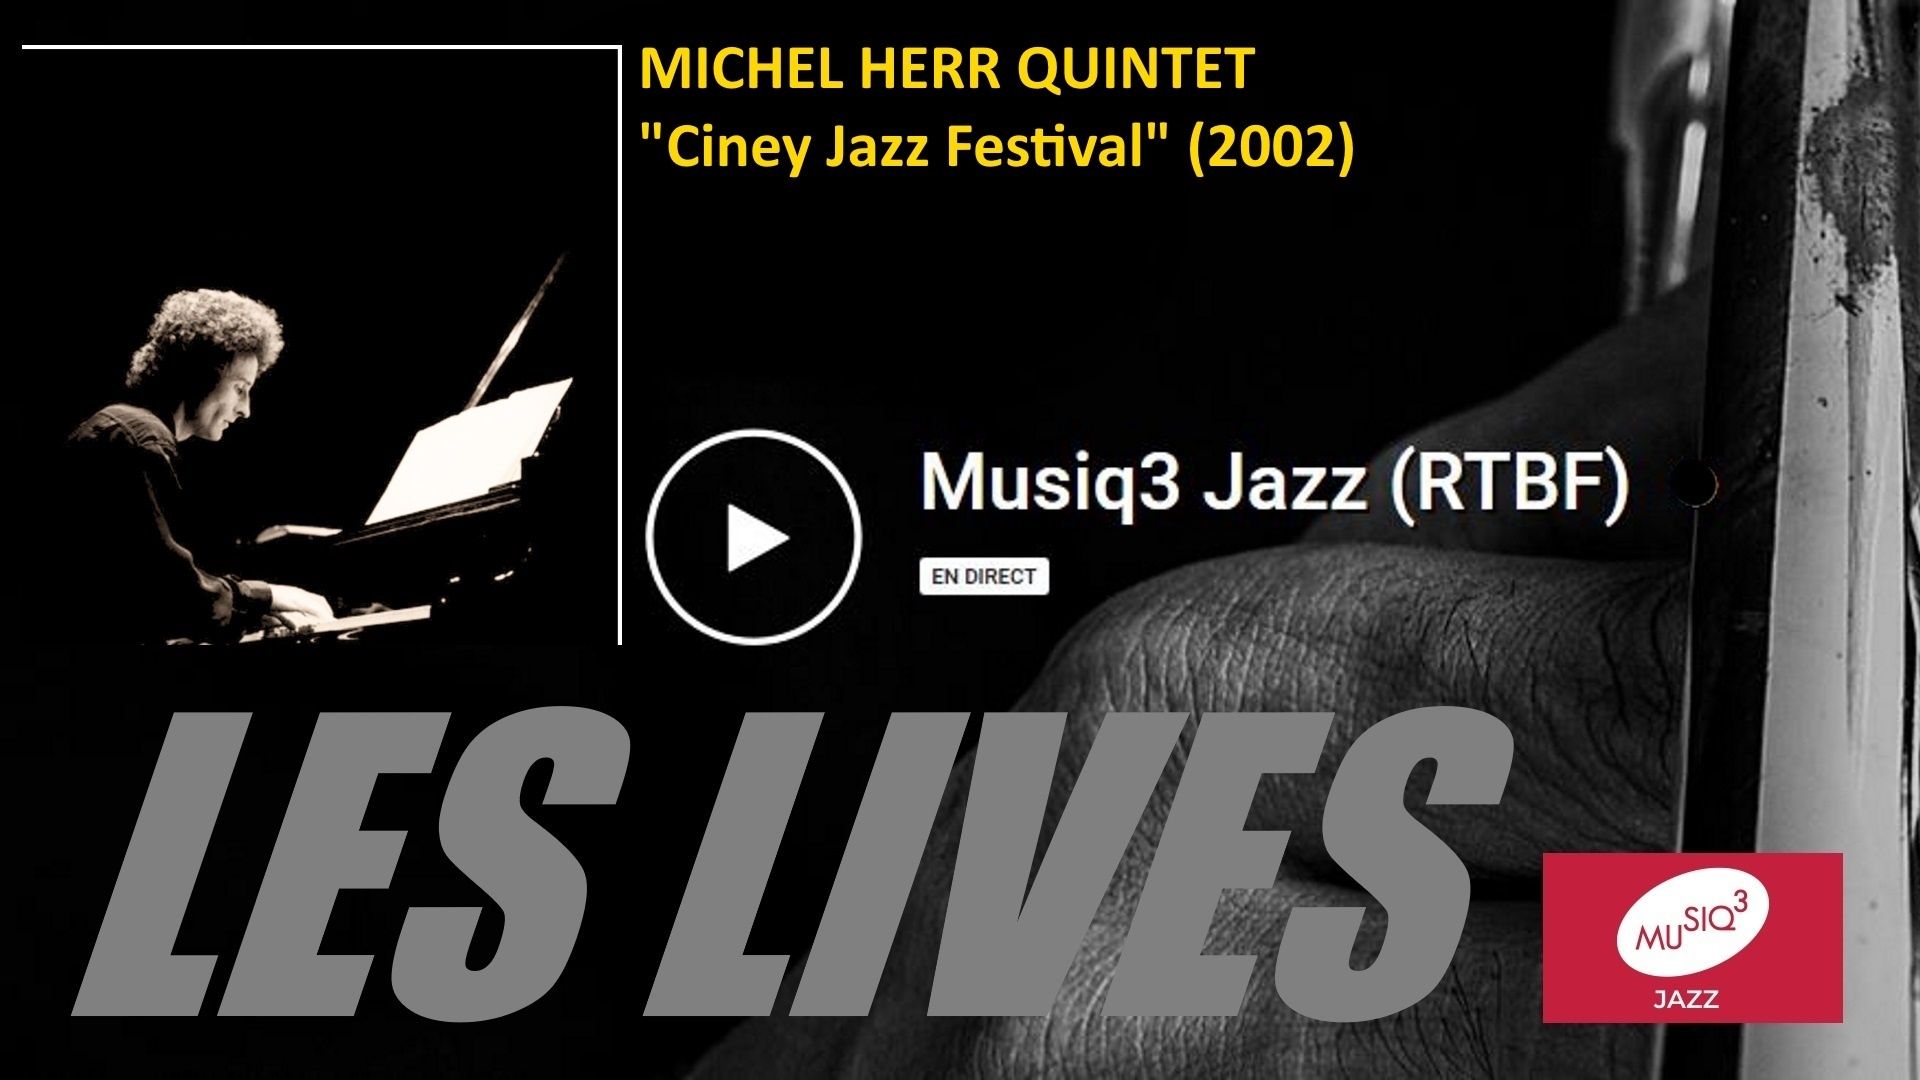 Les lives de Musiq3 Jazz : Michel Herr Quintet (Ciney Jazz Festival, 2002)